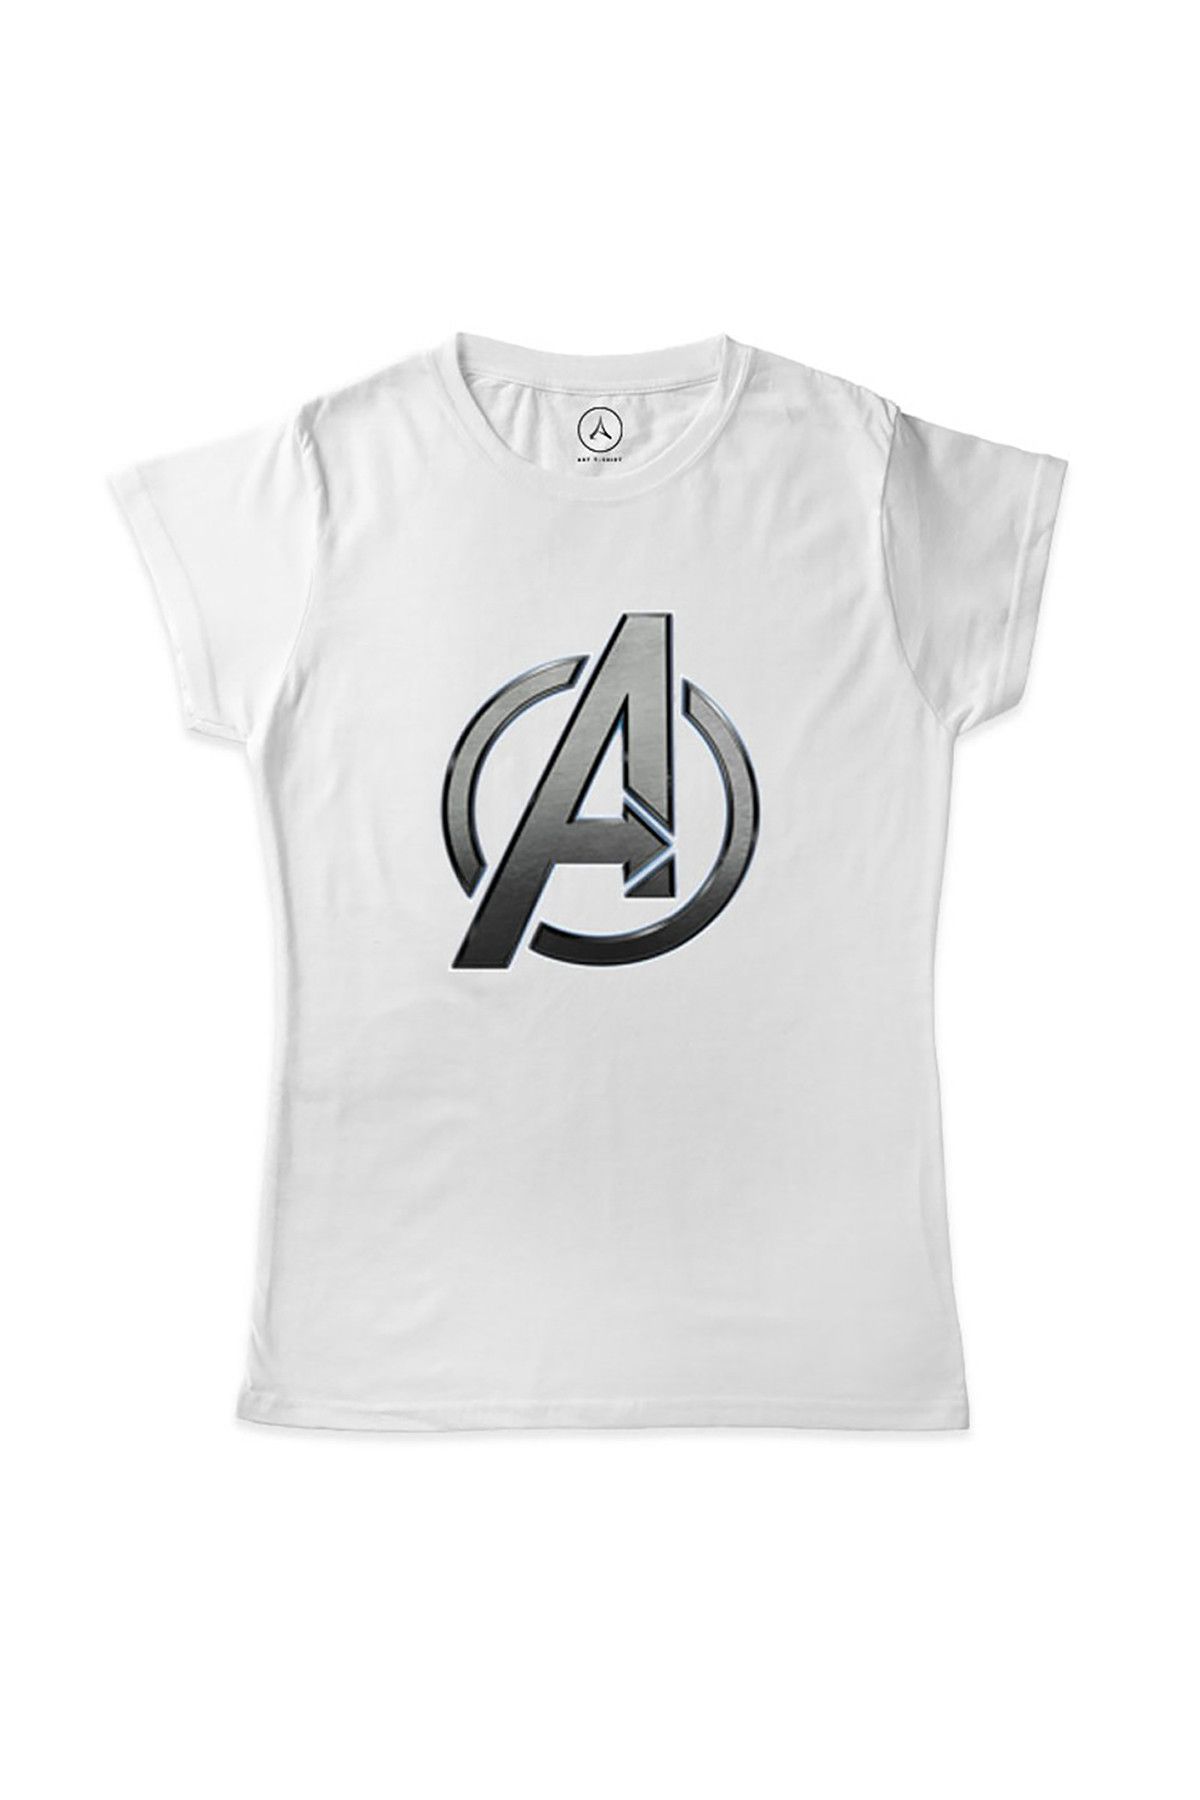 Art T-Shirt Kadın Beyaz Avengers Sılver Logo T-Shirt